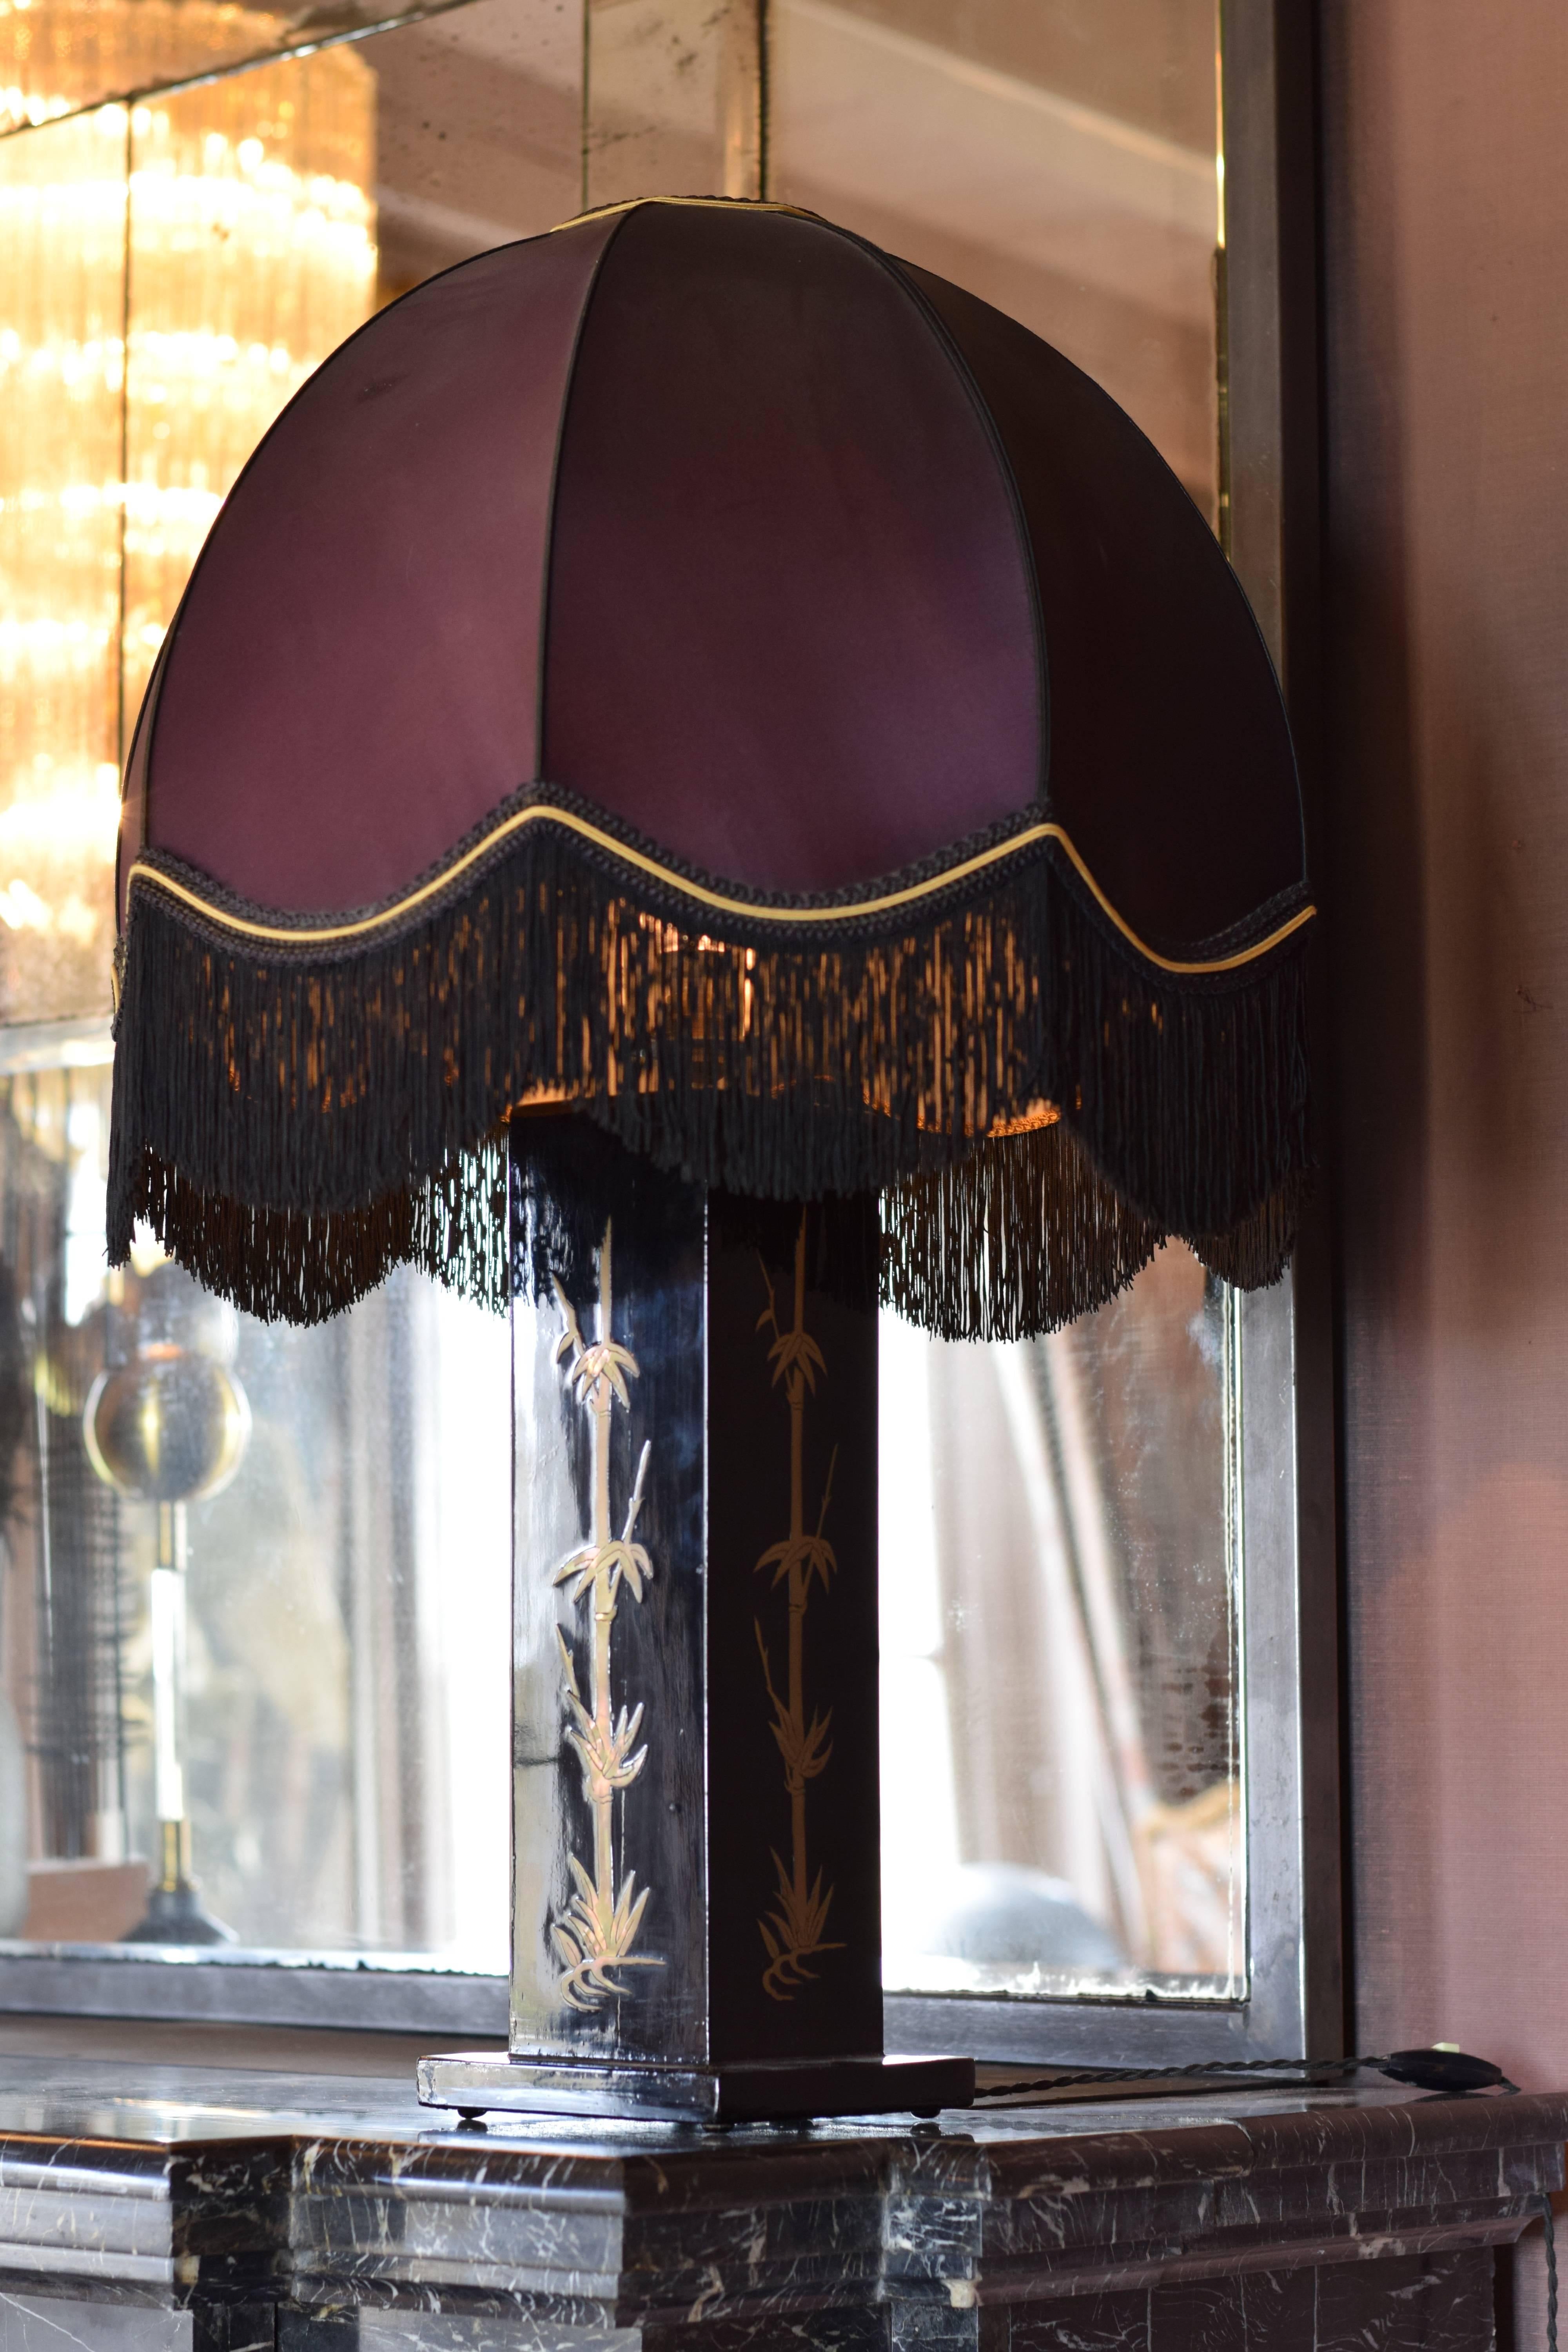 Lampe de table des années 1970 sur pied en laque japonaise dans le style de Jean Claude Mahey.
L'abat-jour présente de belles franges. Le tissu est en bon état, bien que l'on puisse noter une légère décoloration.